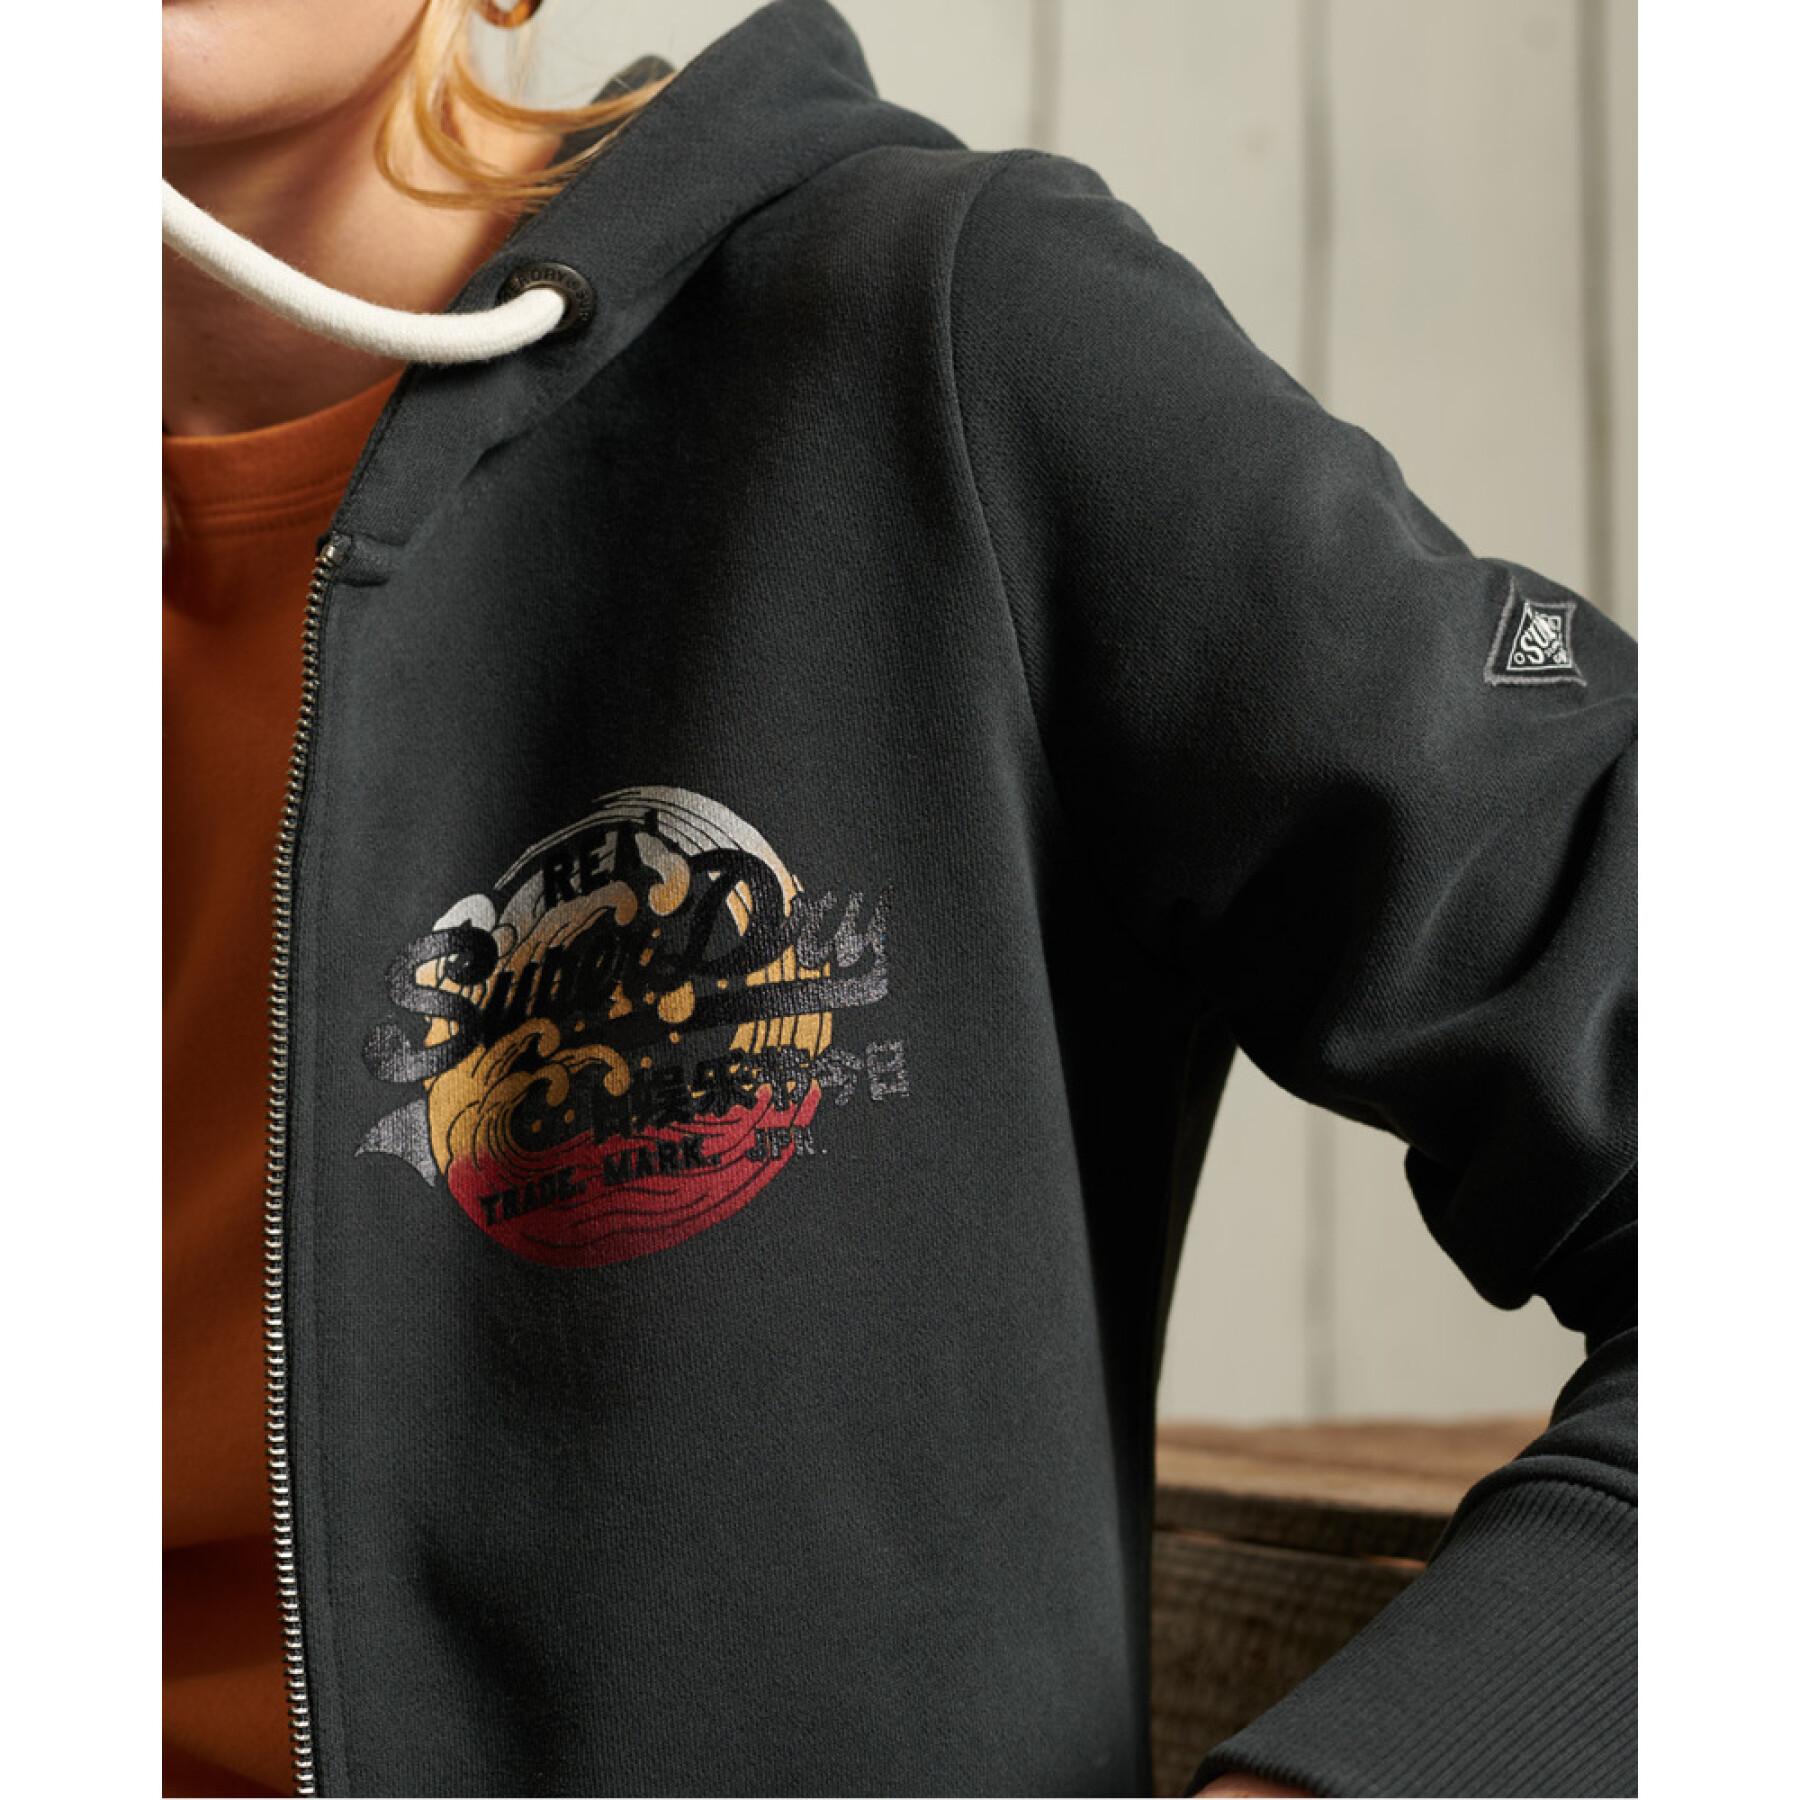 Damska bluza z kapturem zapinana na zamek Superdry Vintage Logo